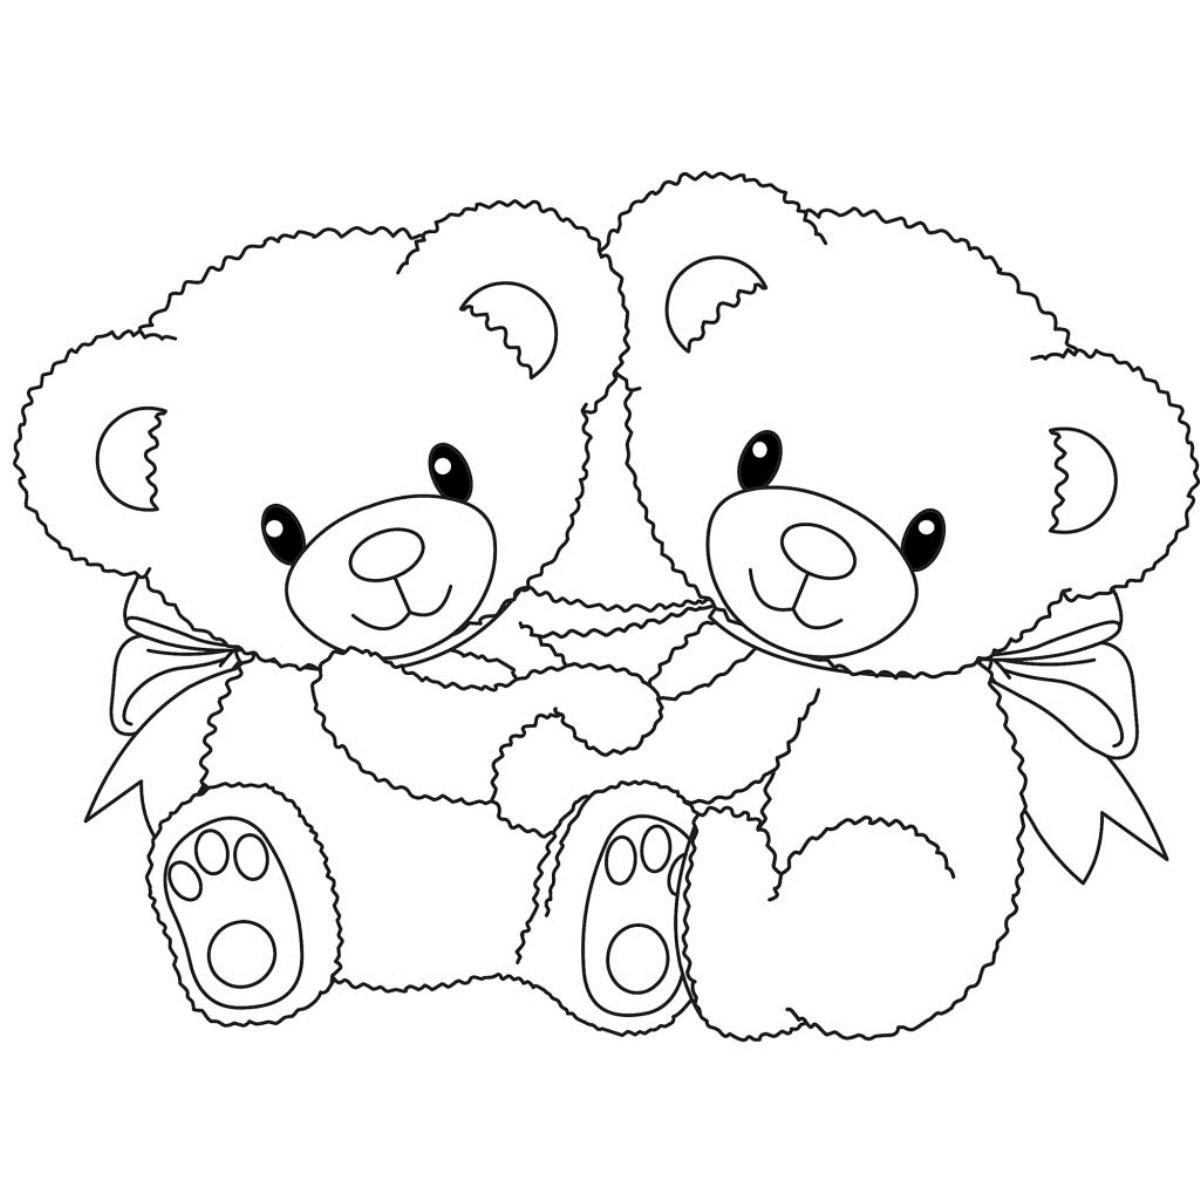 Раскраски с мишками Тедди, милые и красивые раскраски для детей с медвежатами  Мишки Тедди близнецы